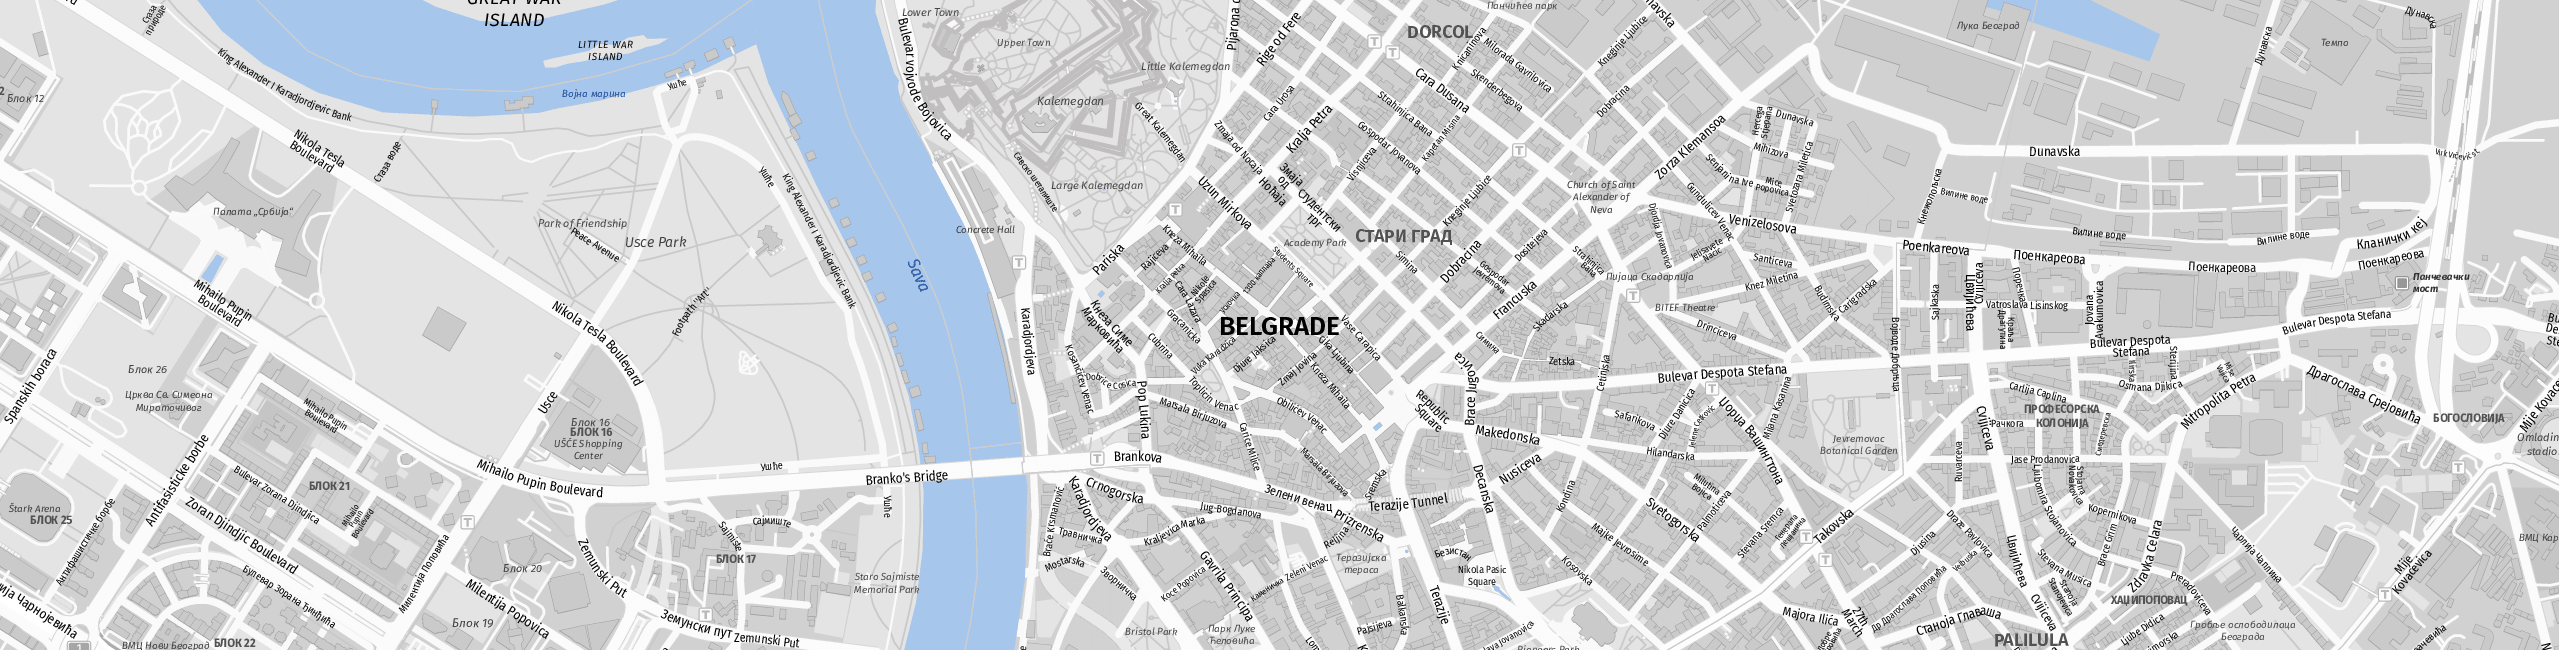 Stadtplan Belgrade zum Downloaden.